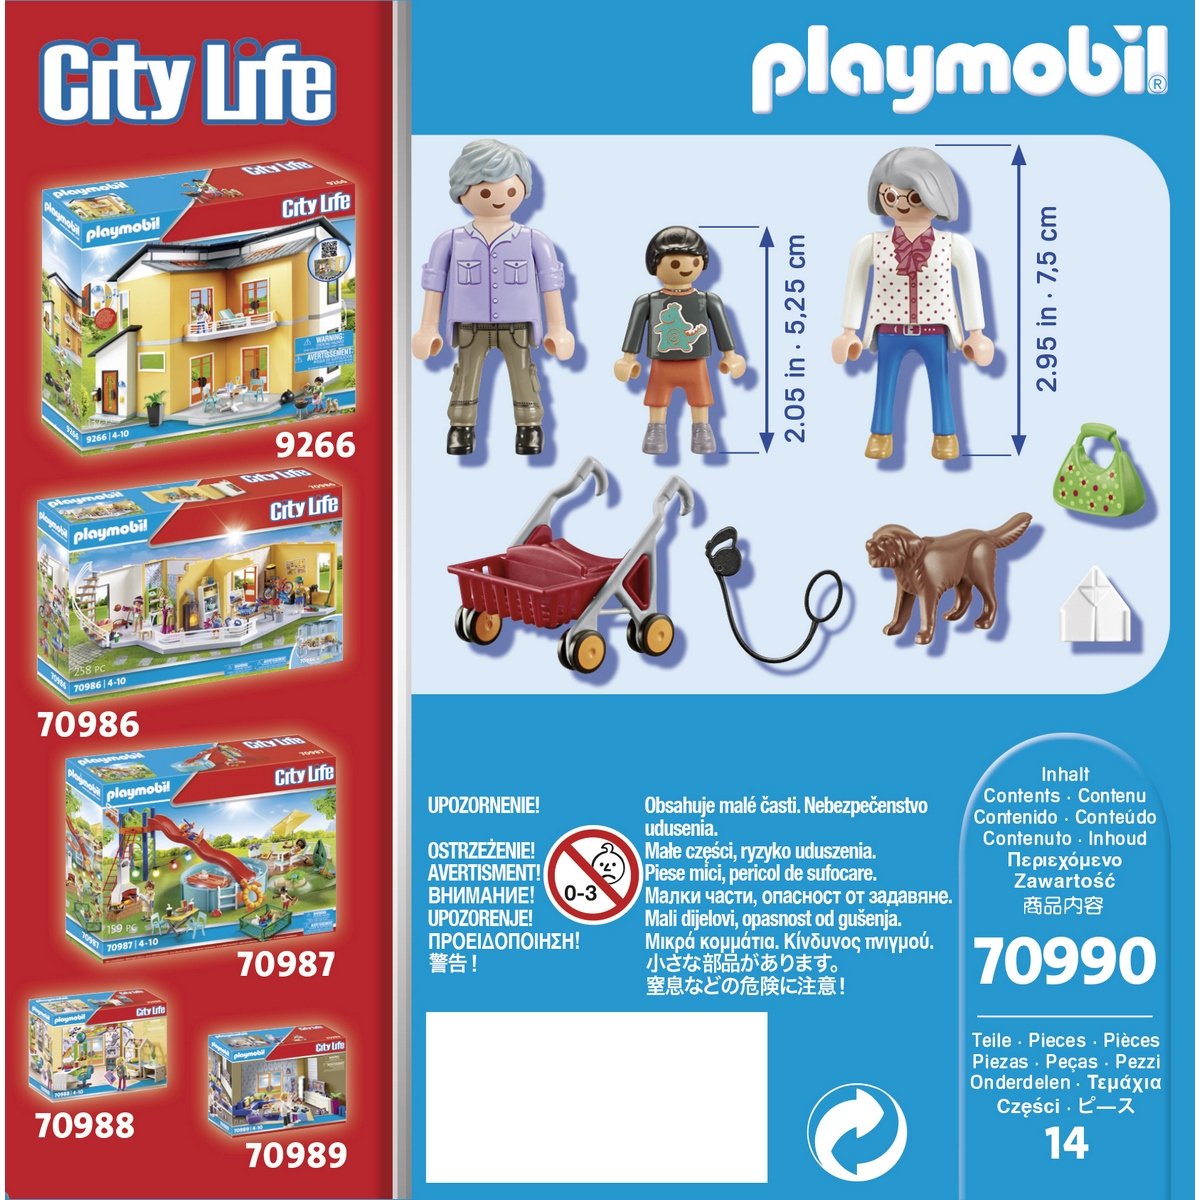 Grands parents Petit-fils Playmobil City Life 70990 - La Grande Récré